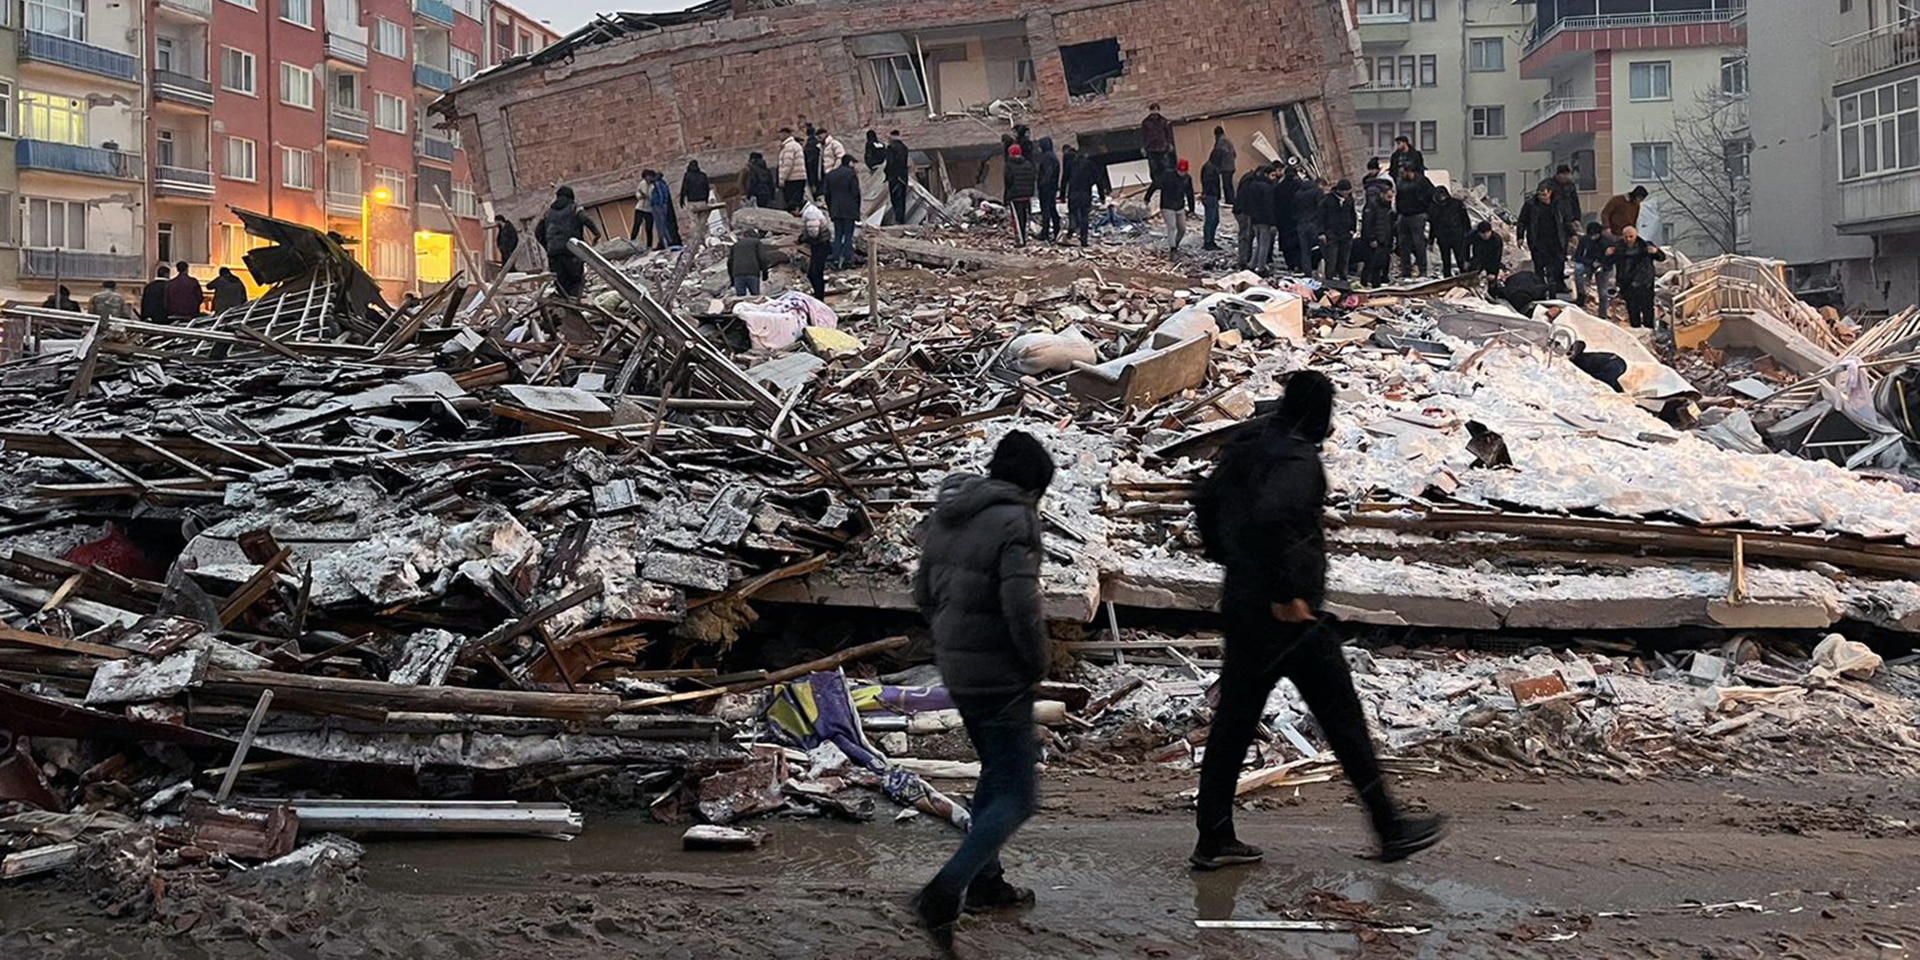 Molte persone in piedi davanti alle macerie di un edificio crollato.